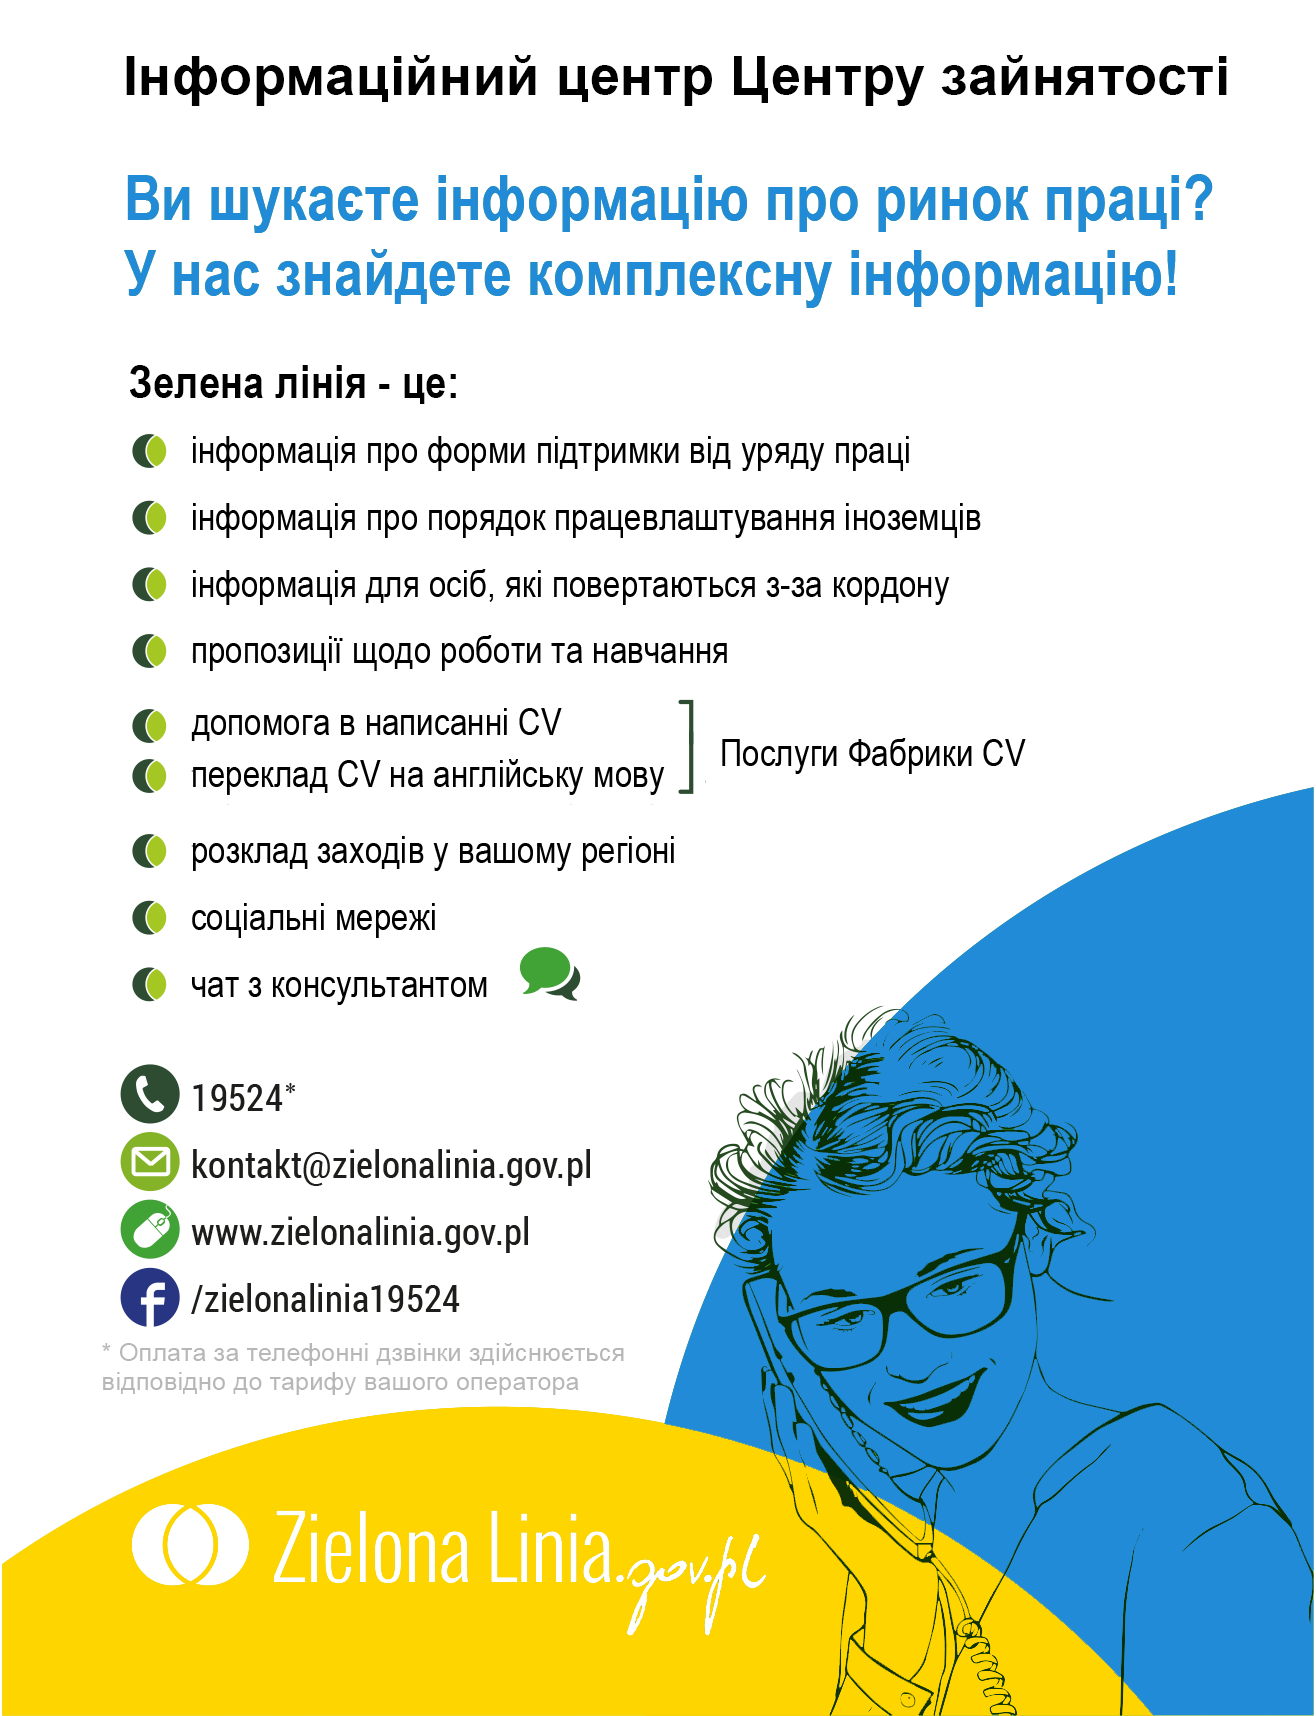 Ukraina-iformacja-zielona-linia